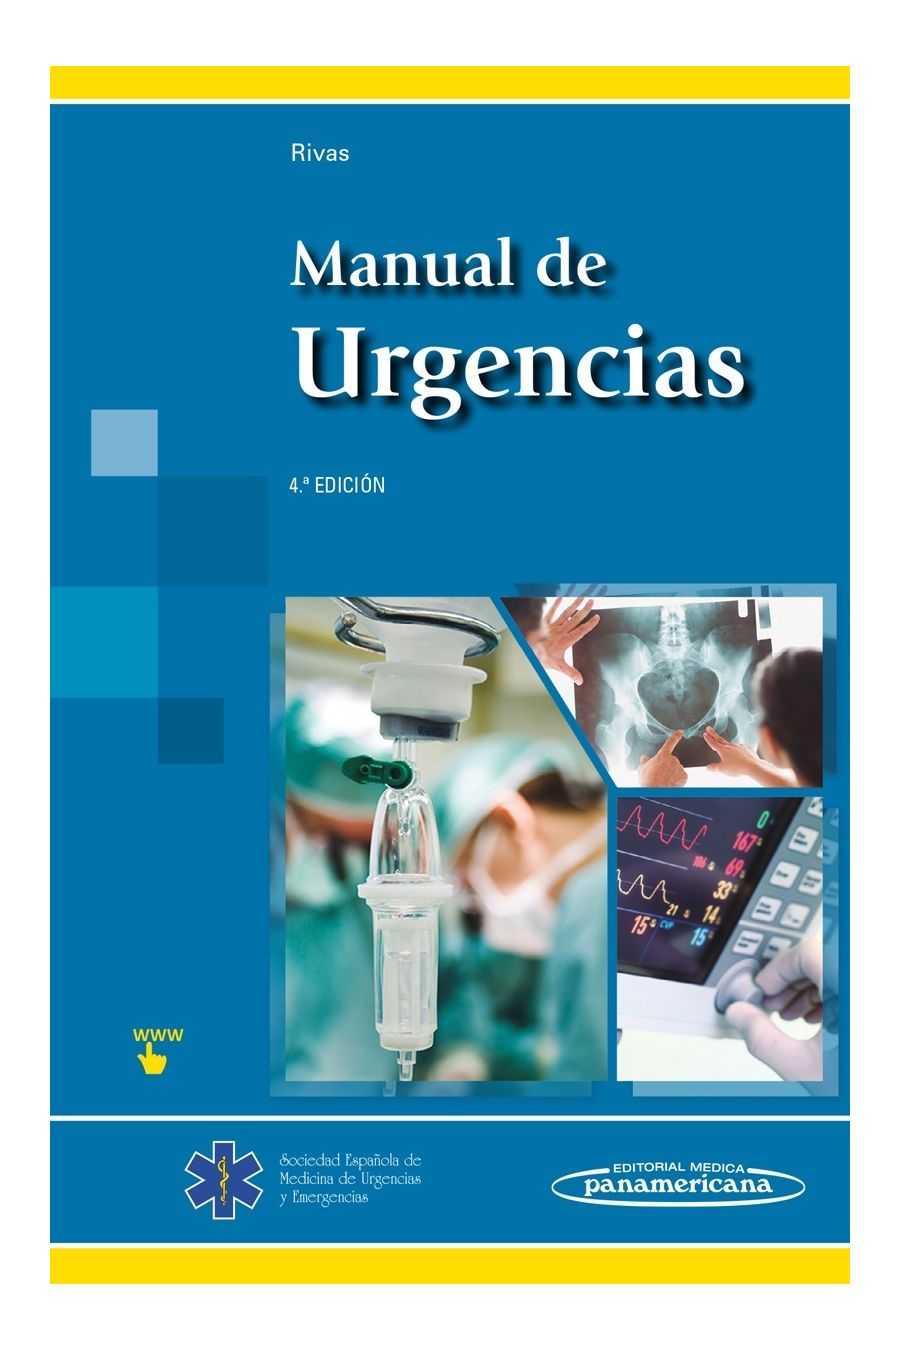 Manual de Urgencias. Rivas